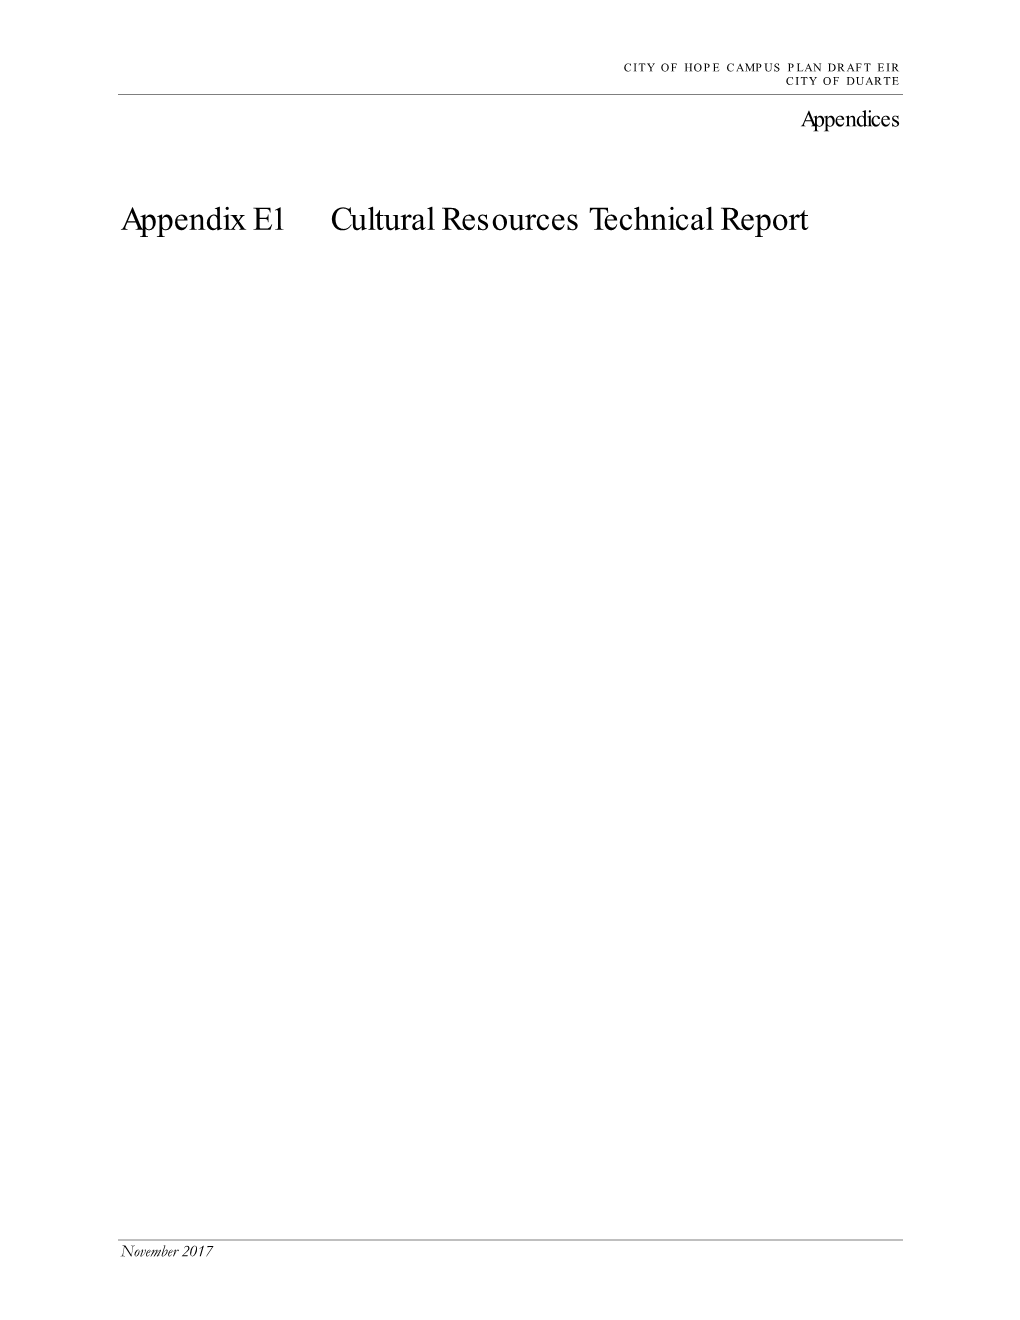 Appendix E1 Cultural Resources Technical Report